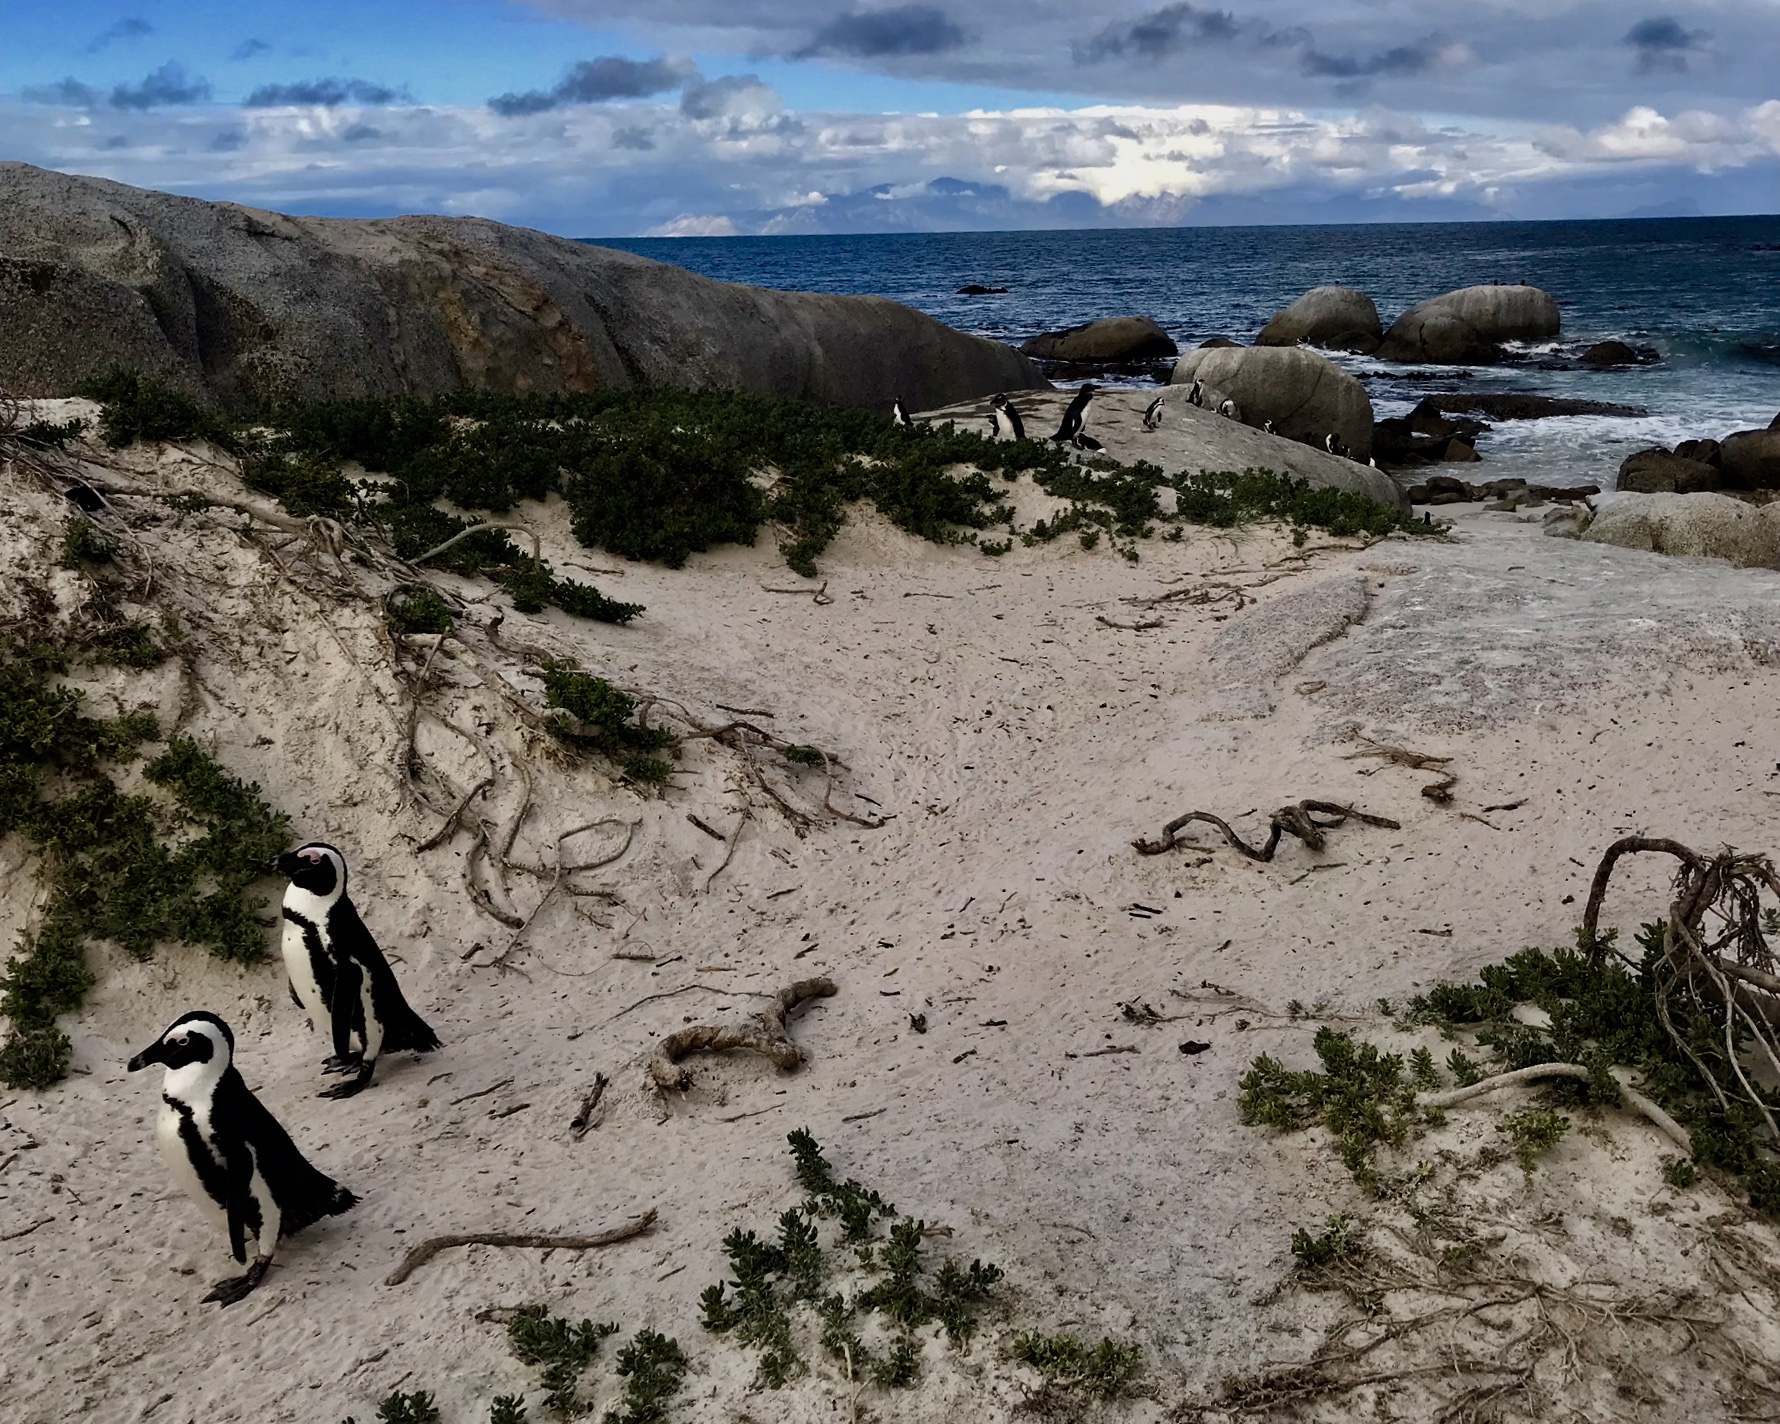 Cape Town: Boulders Beach Penguins